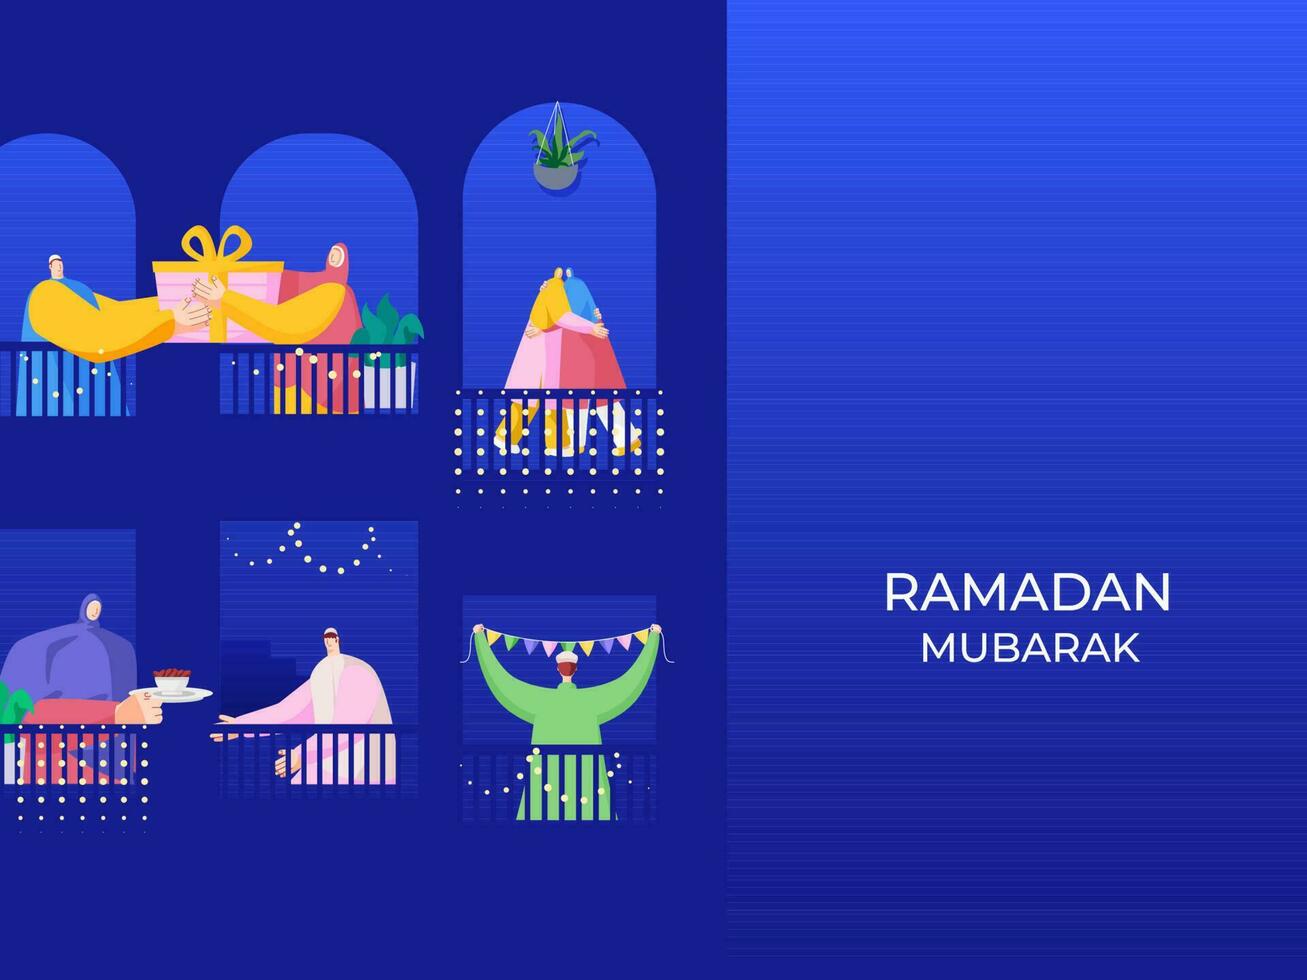 islámico personas celebrar y disfrutar con cada otro a su balcón en el ocasión de Ramadán mubarak. vector